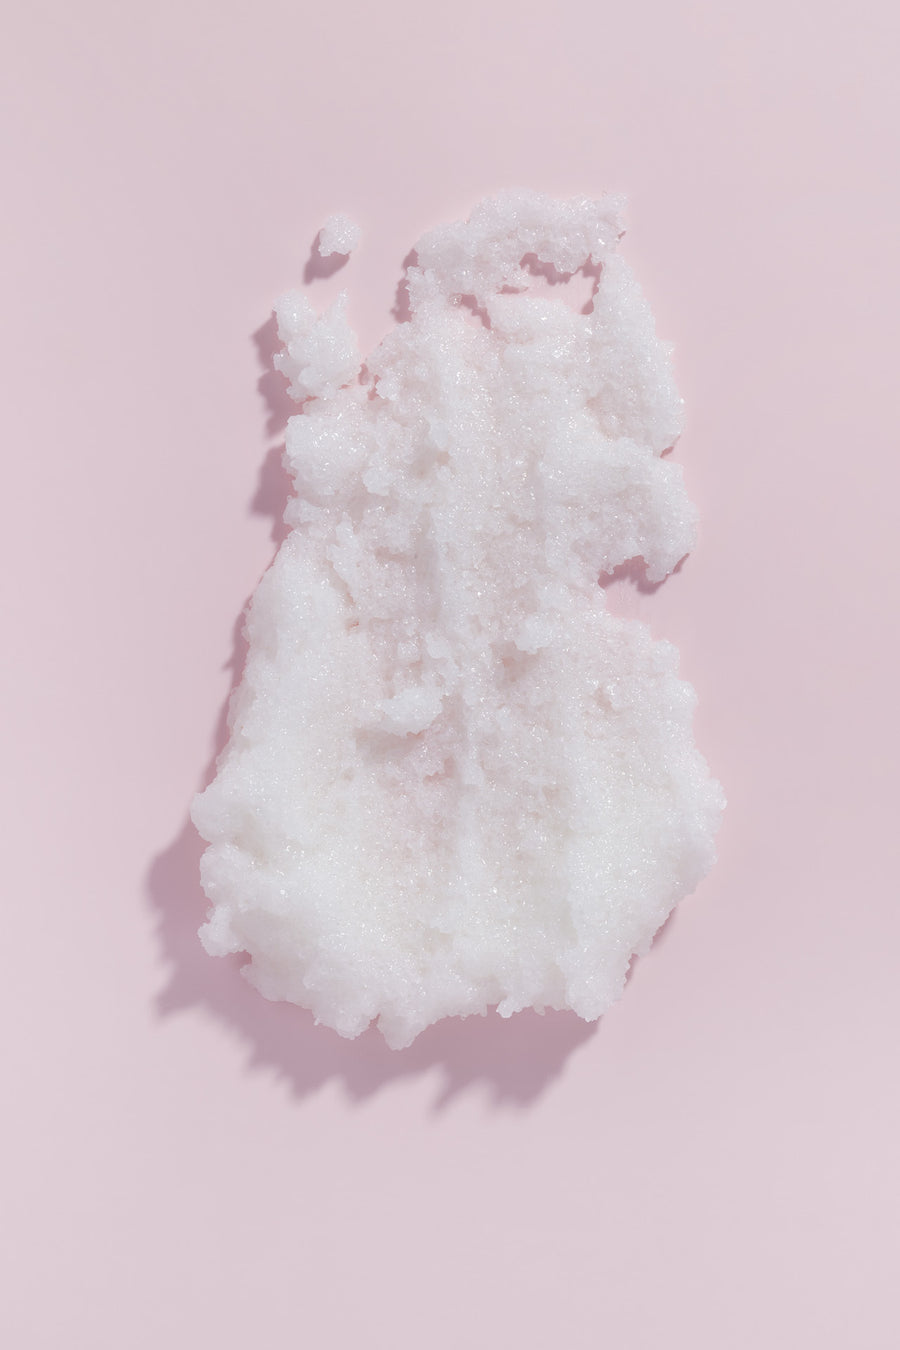 goop image on pink background of salt polish